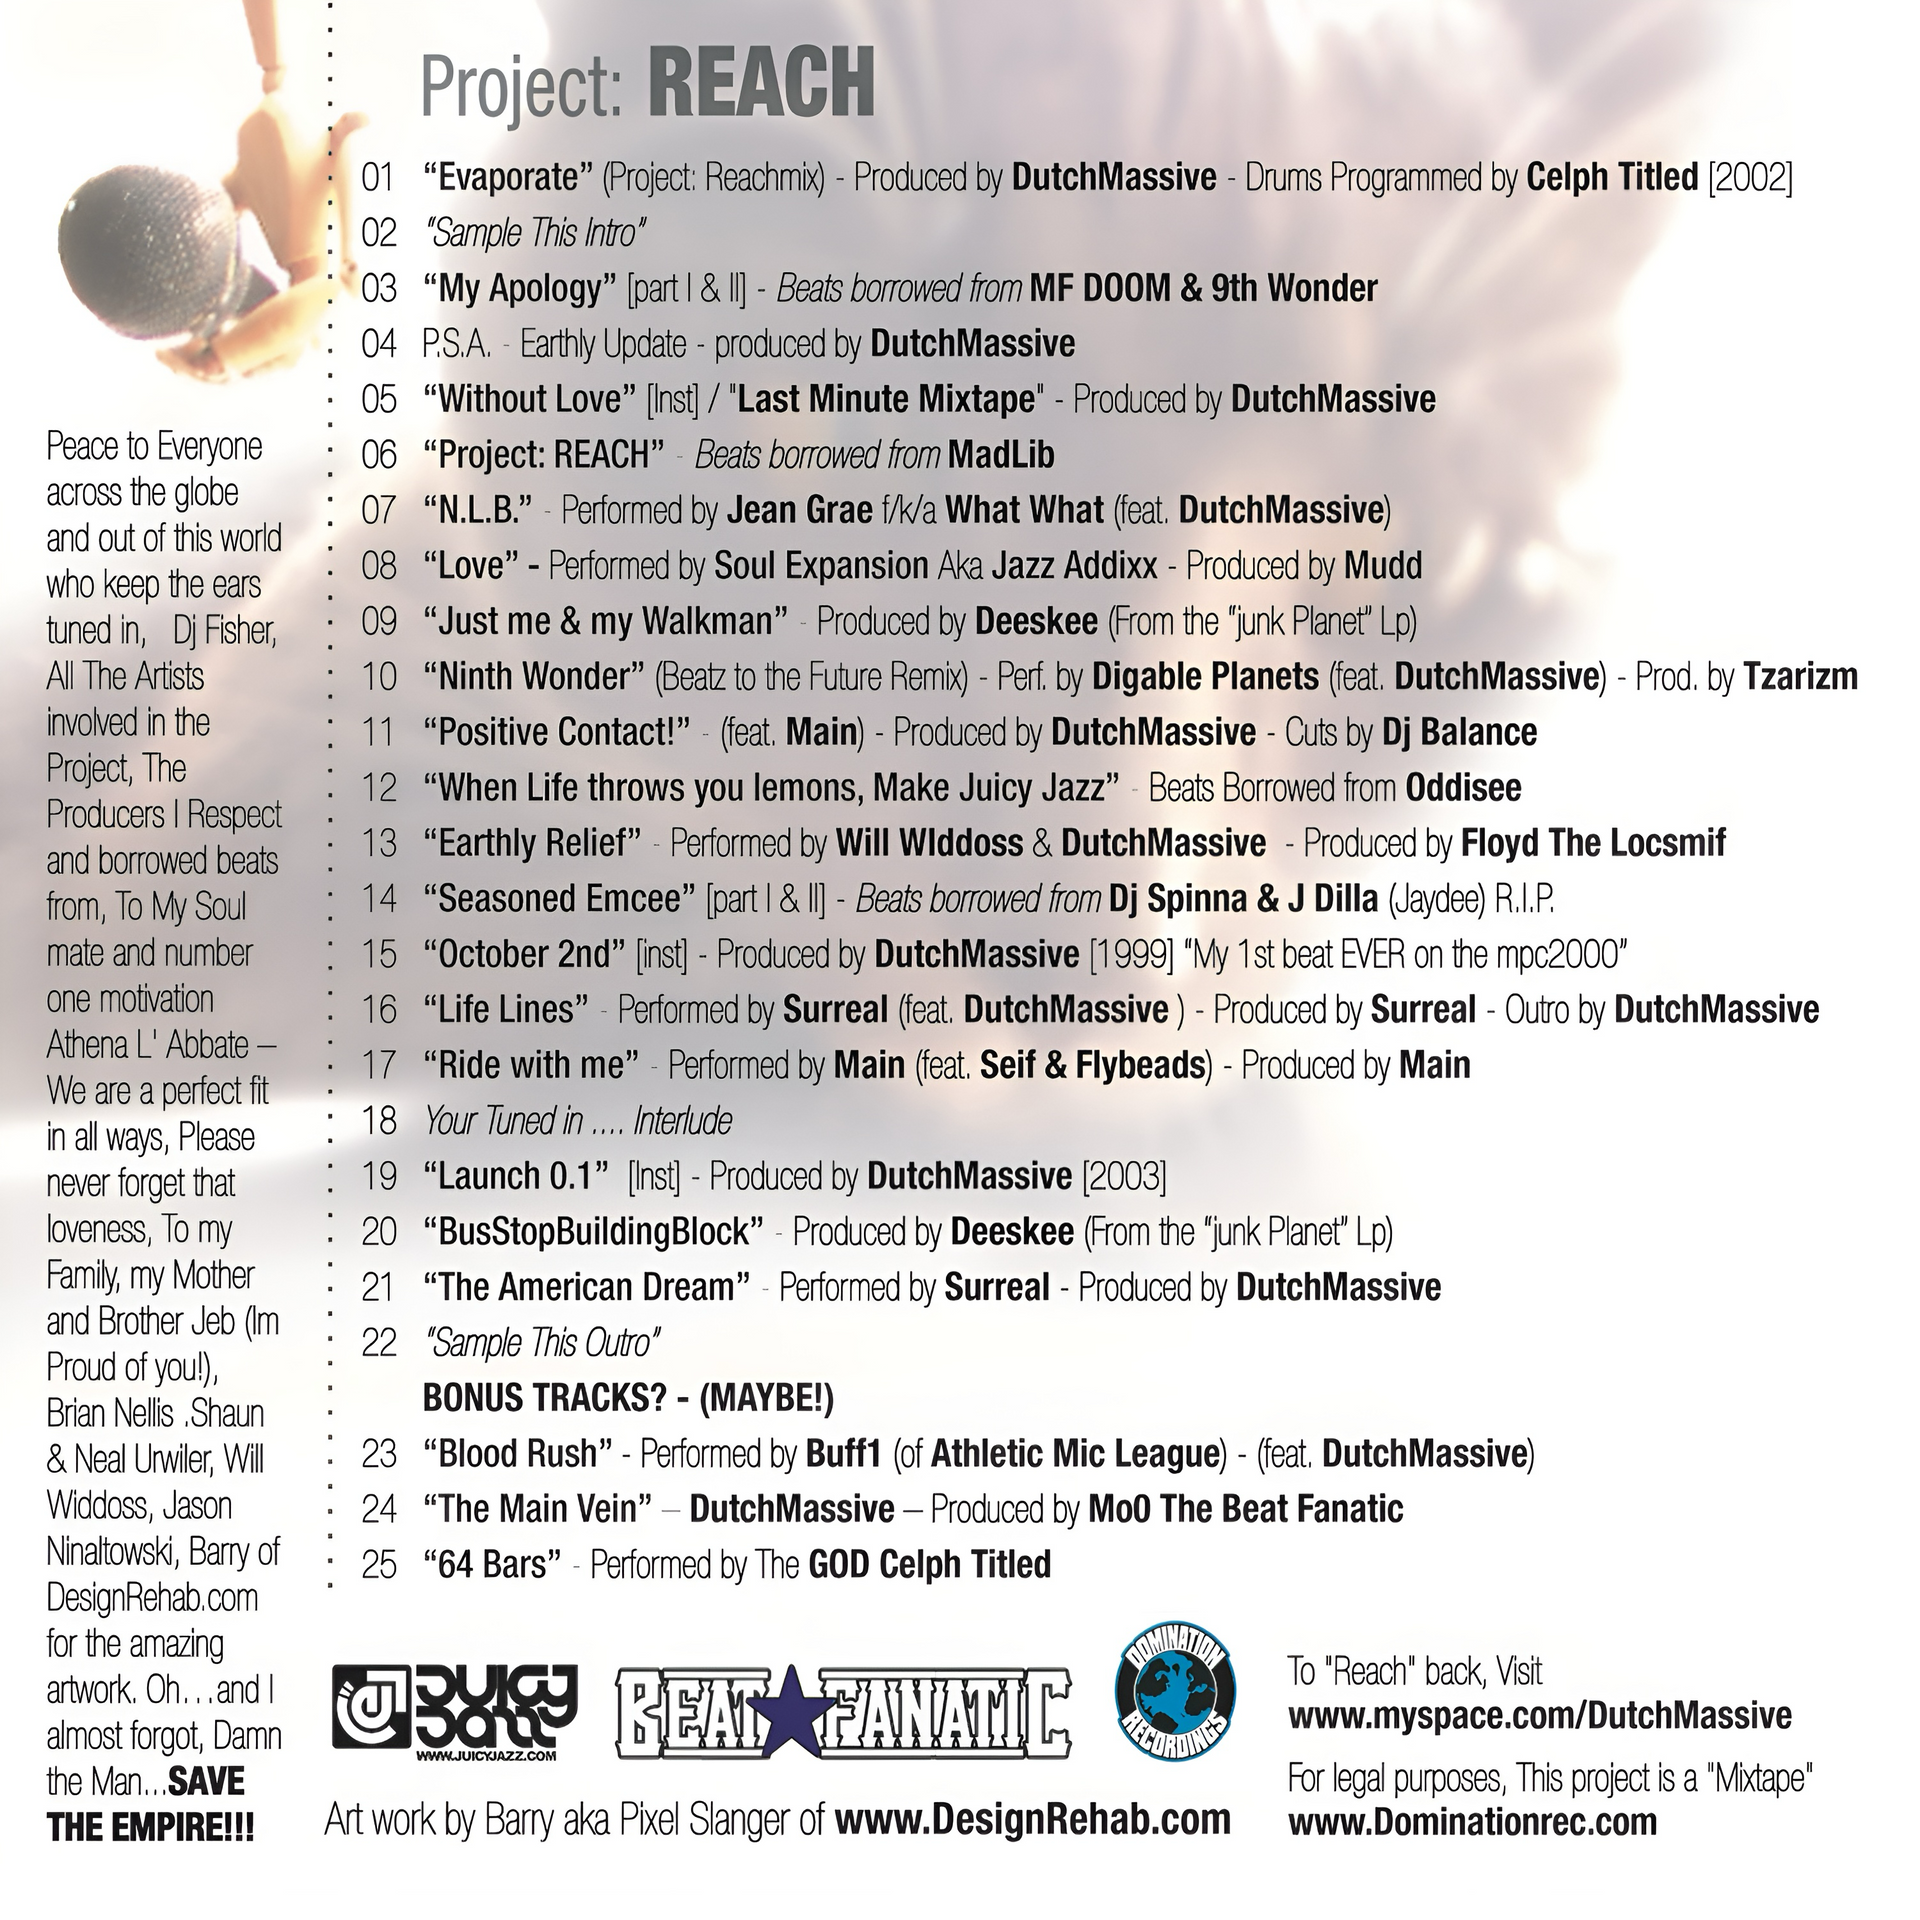 Project: REACH by Dutchyyy